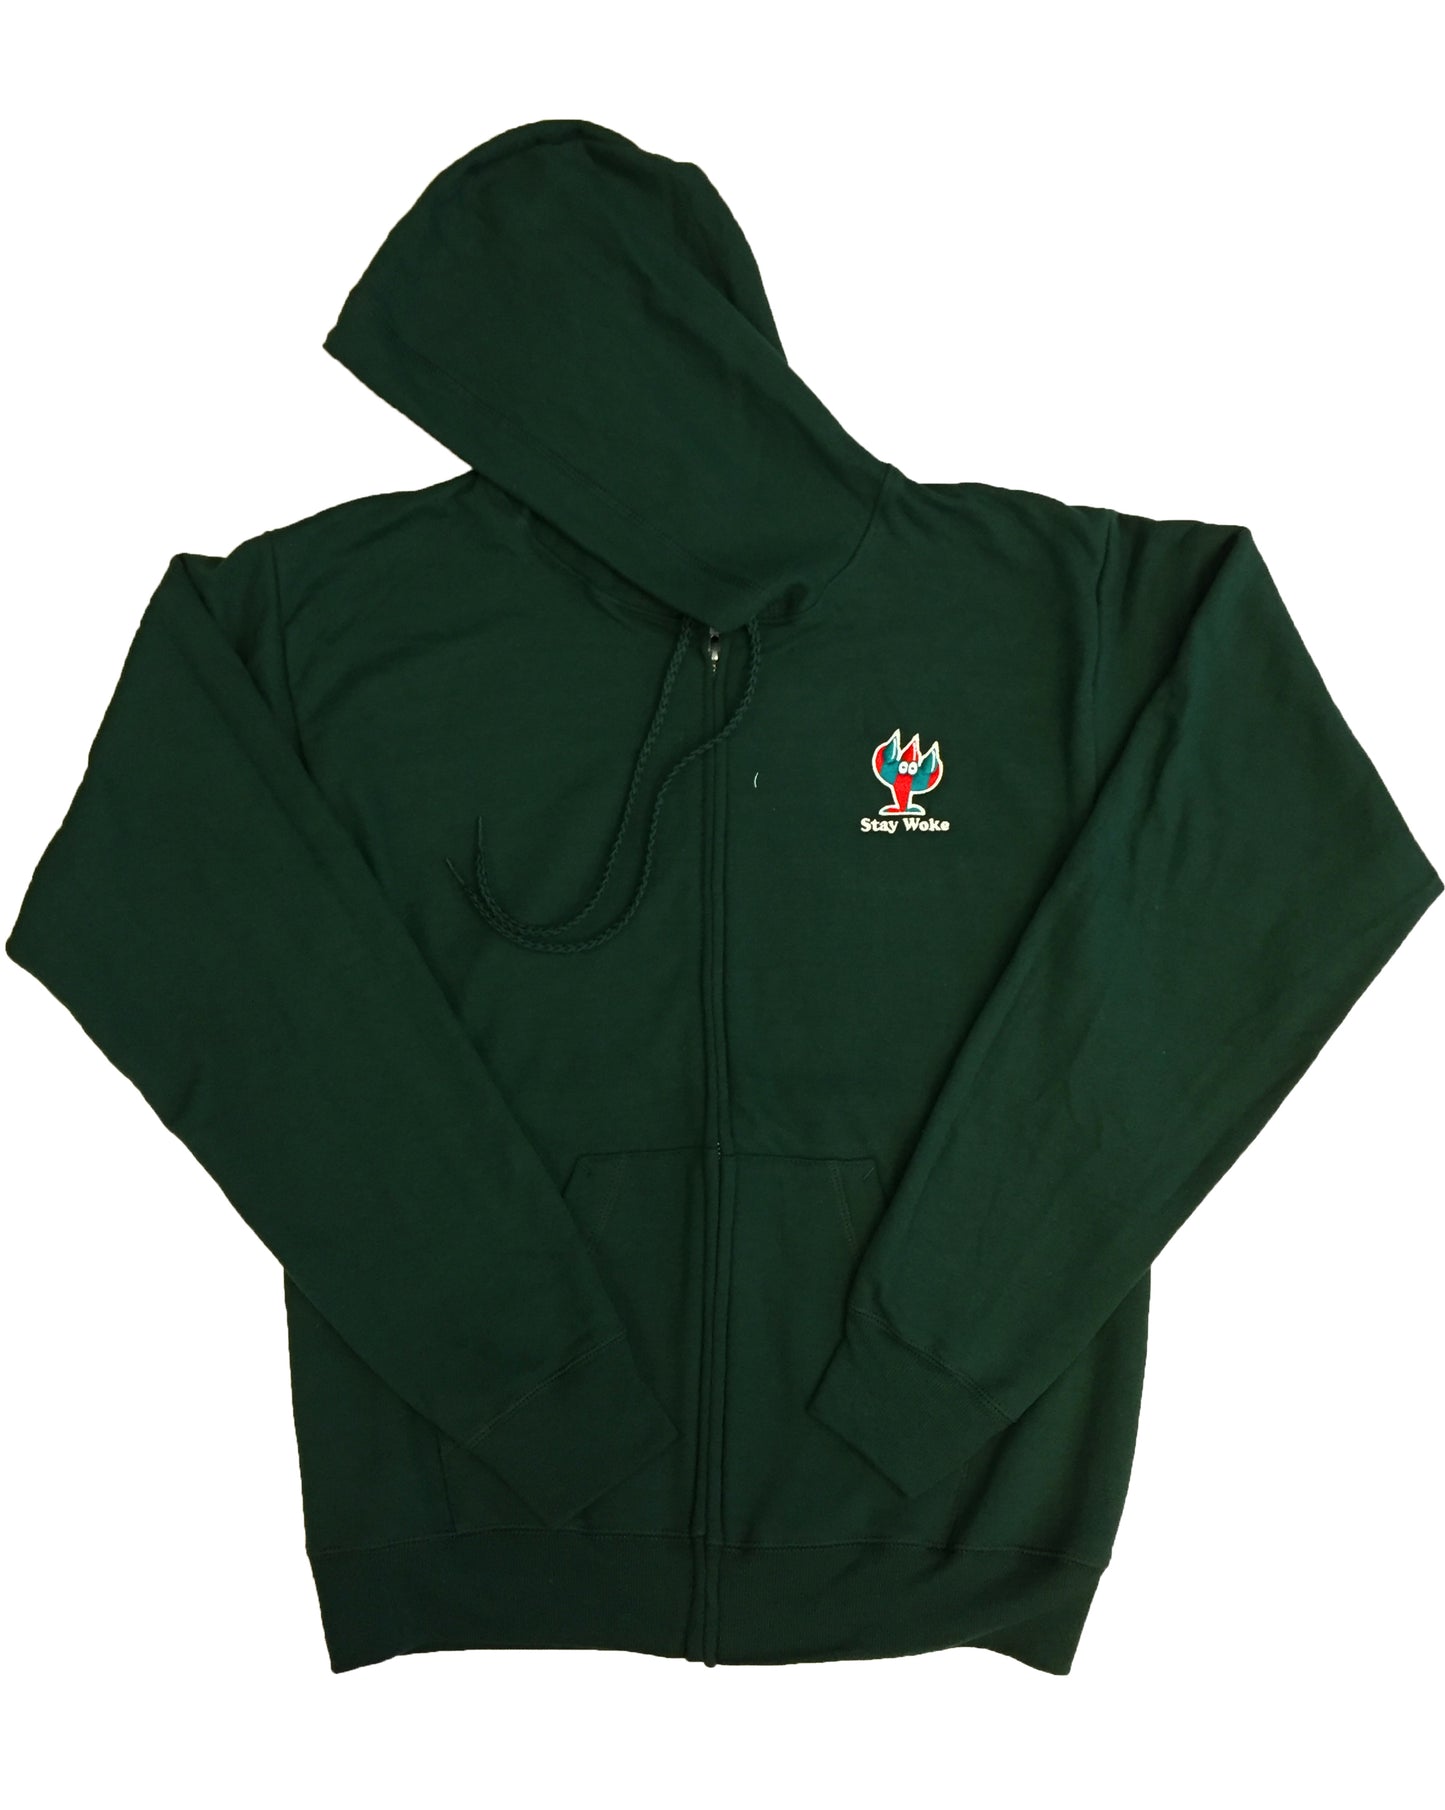 STAY WOKE Green zip hoodie